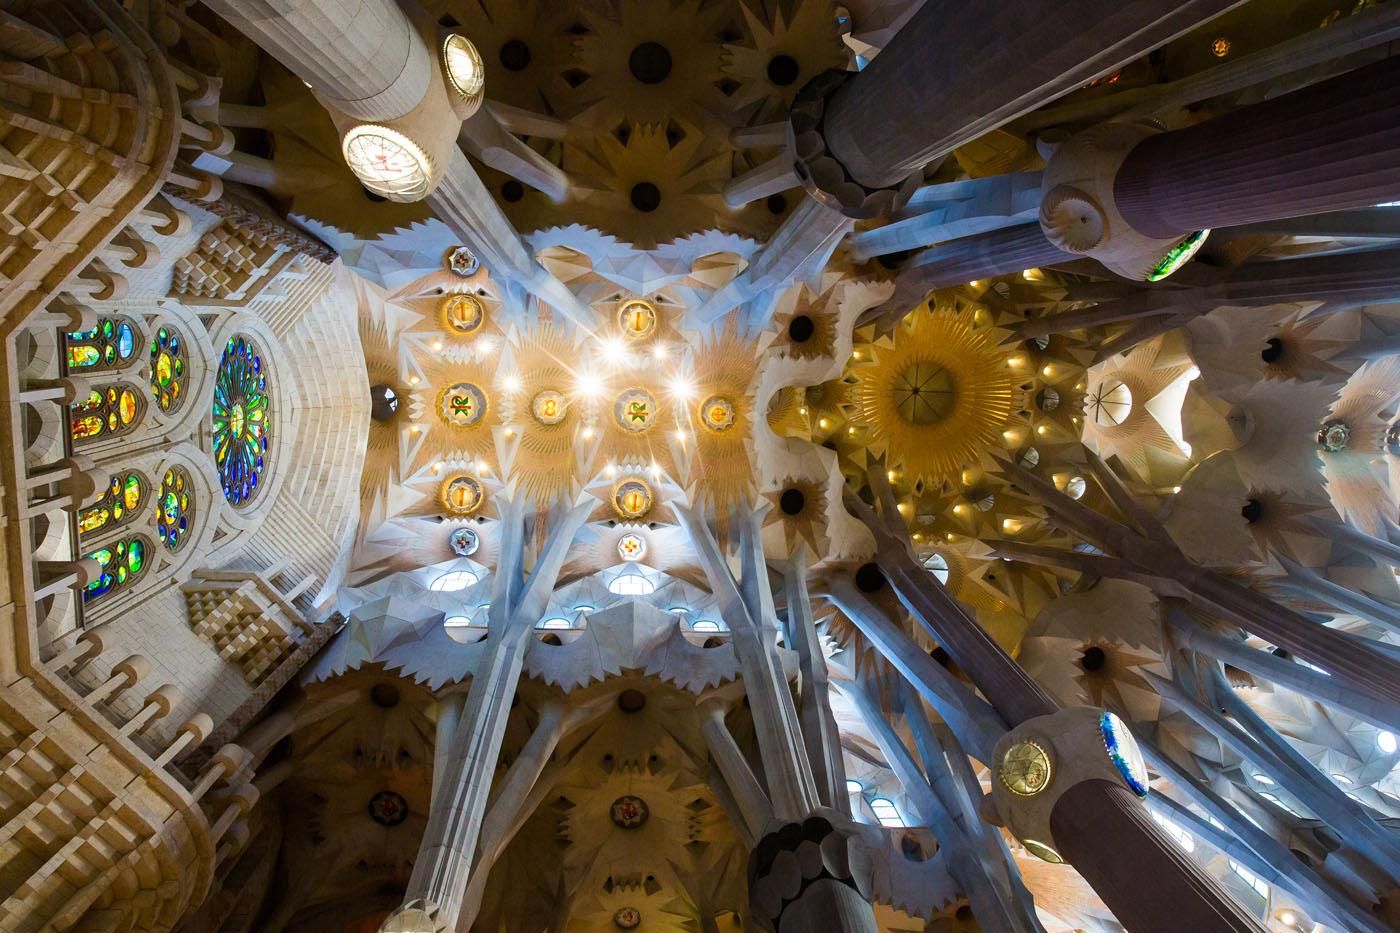 Sagrada Familia Ceiling